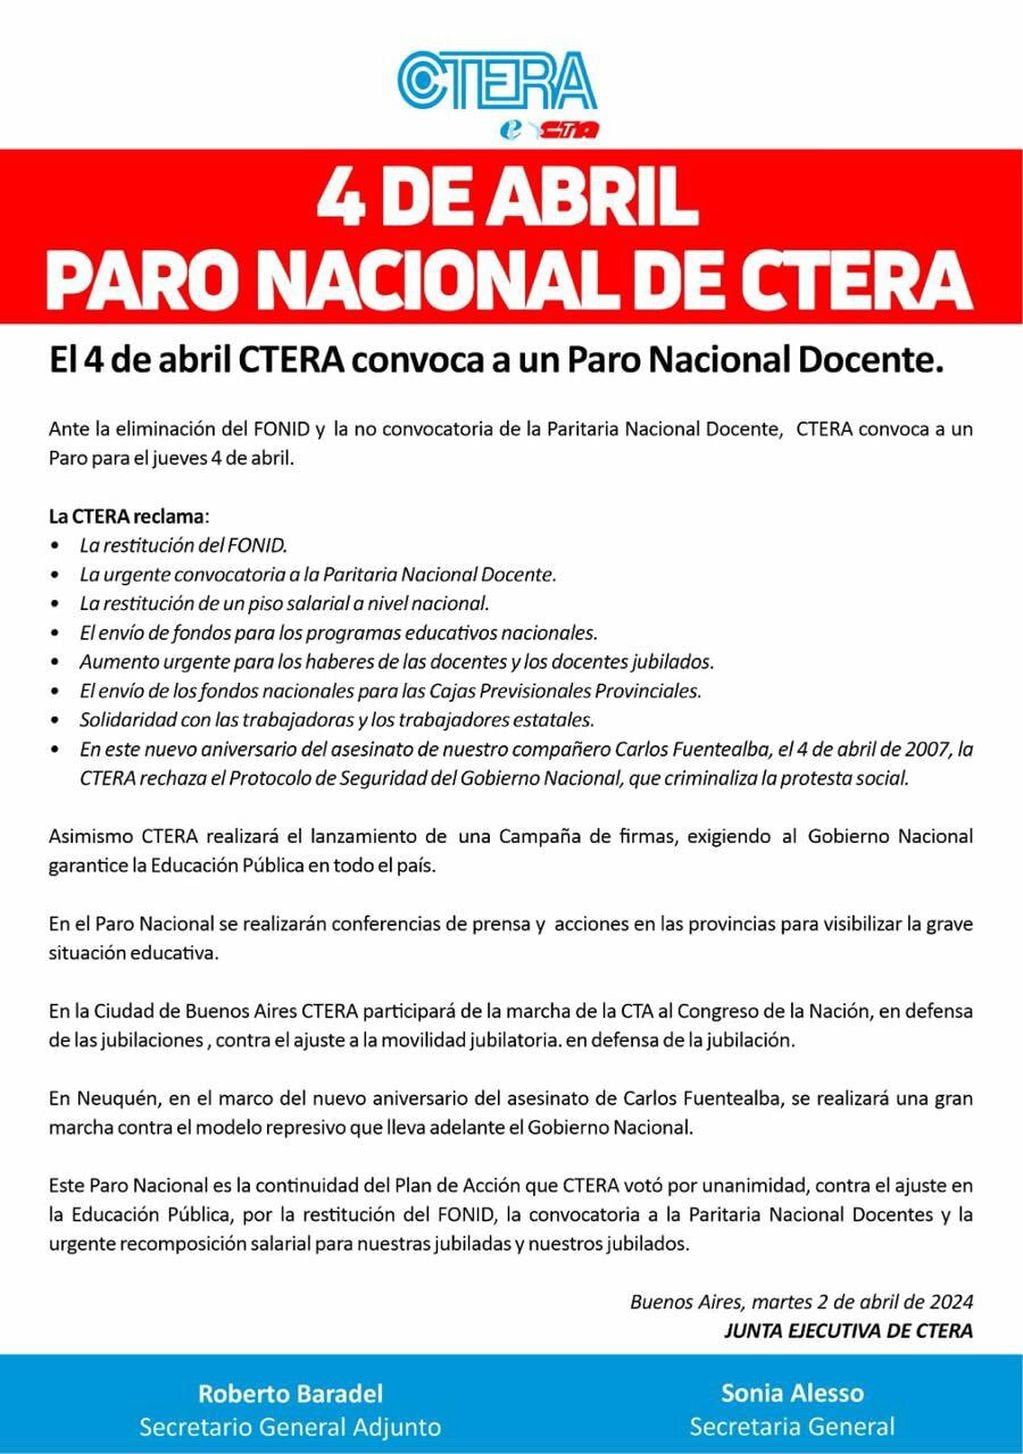 La Confederación de Trabajadores de la Educación de la República Argentina (Ctera) ha anunciado un paro nacional docente para el próximo jueves 4 de abril.